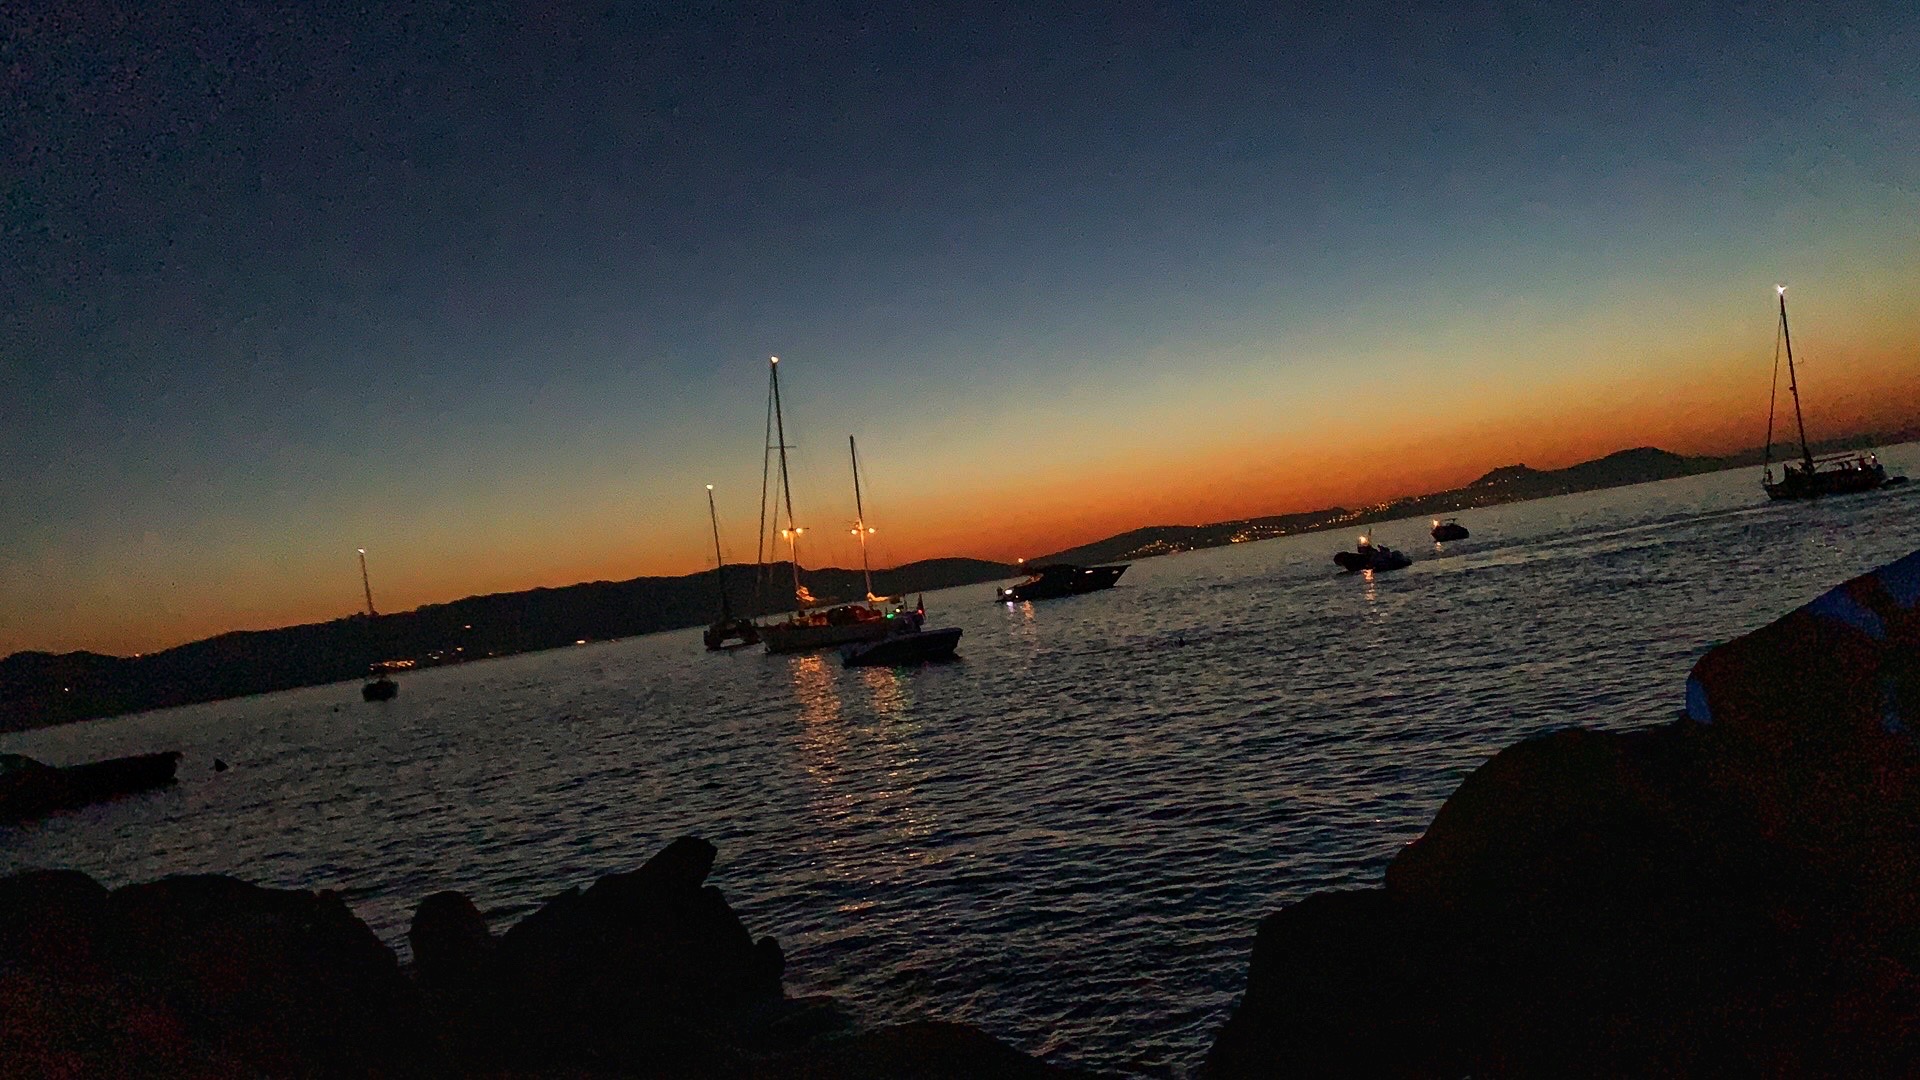 porto cervo .🇮🇹.土豪的私人港口..世界上最美的日落🌄